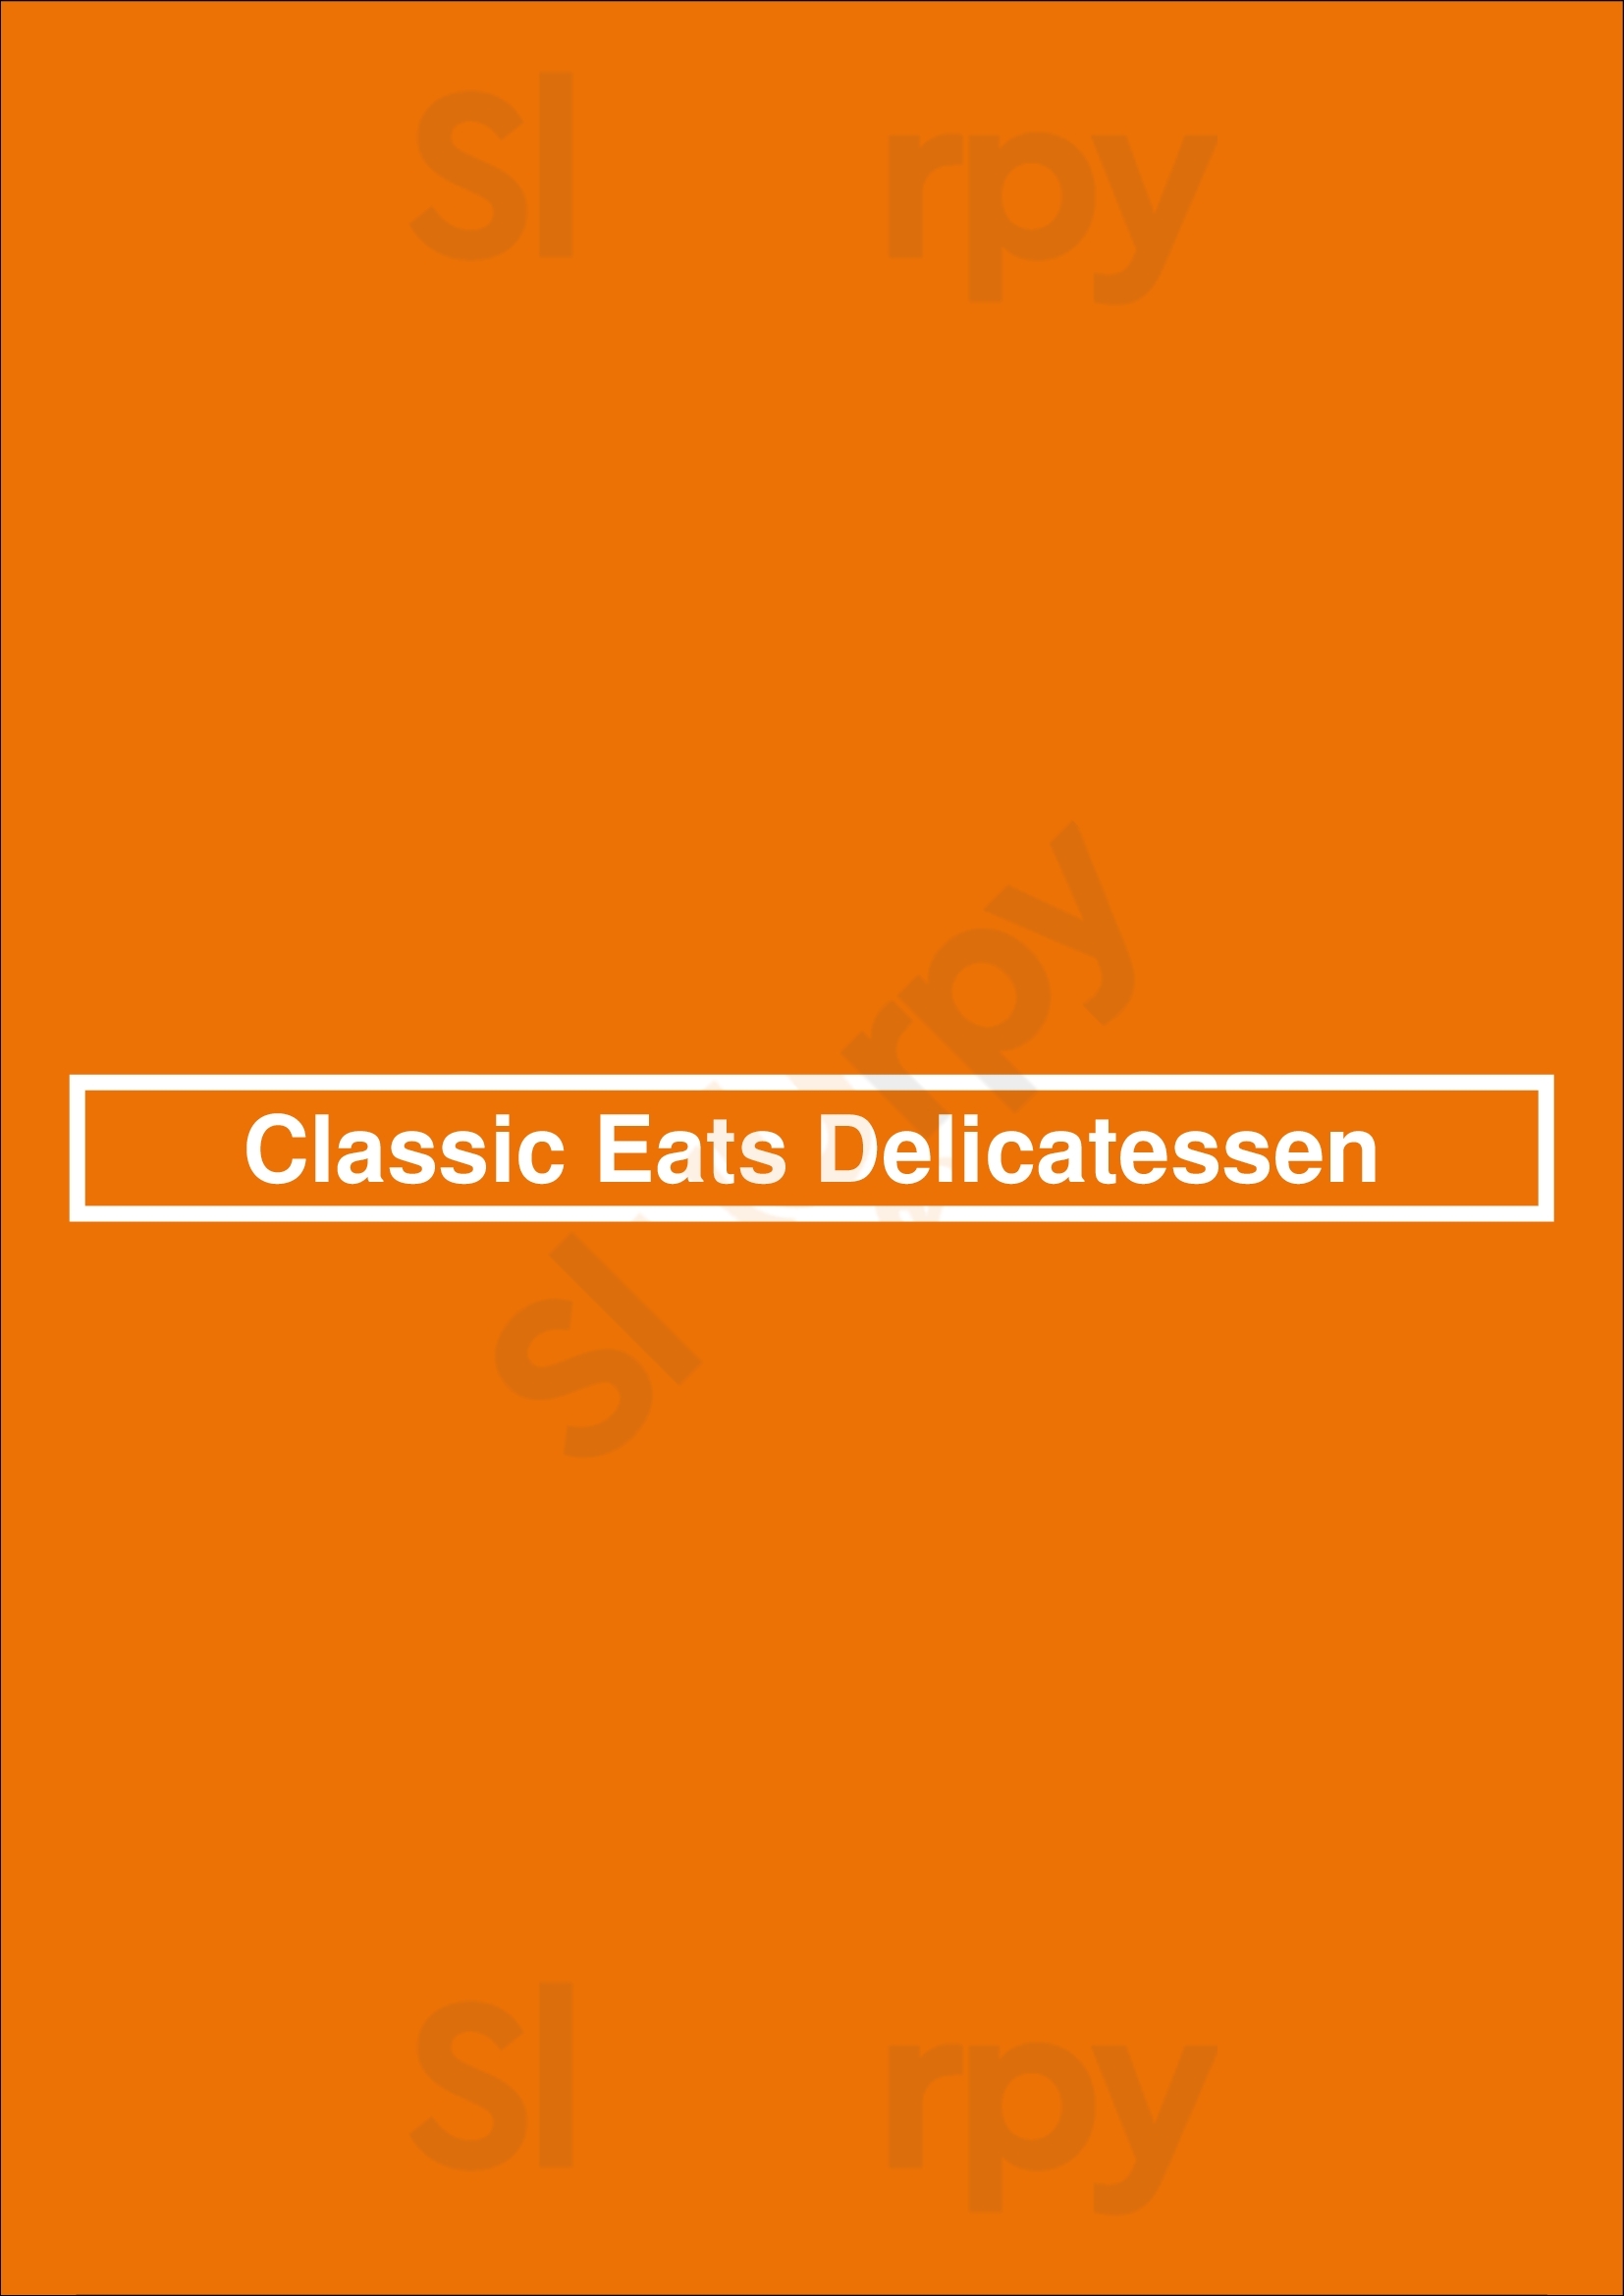 Classic Eats Delicatessen Denver Menu - 1